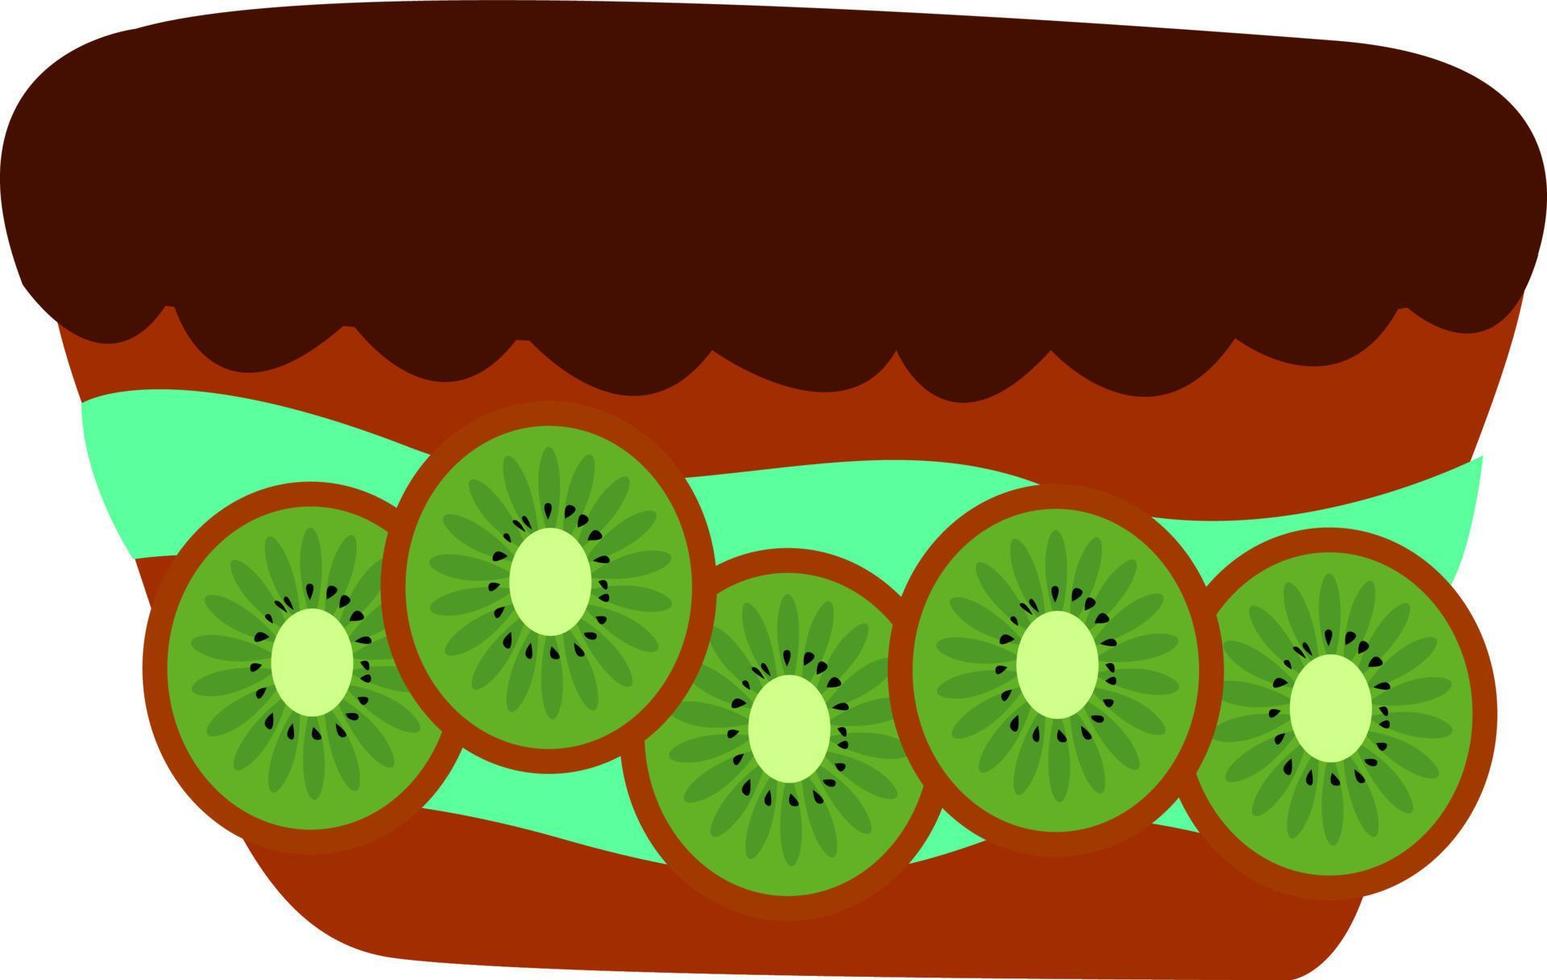 bolo de kiwi, ilustração, vetor em fundo branco.